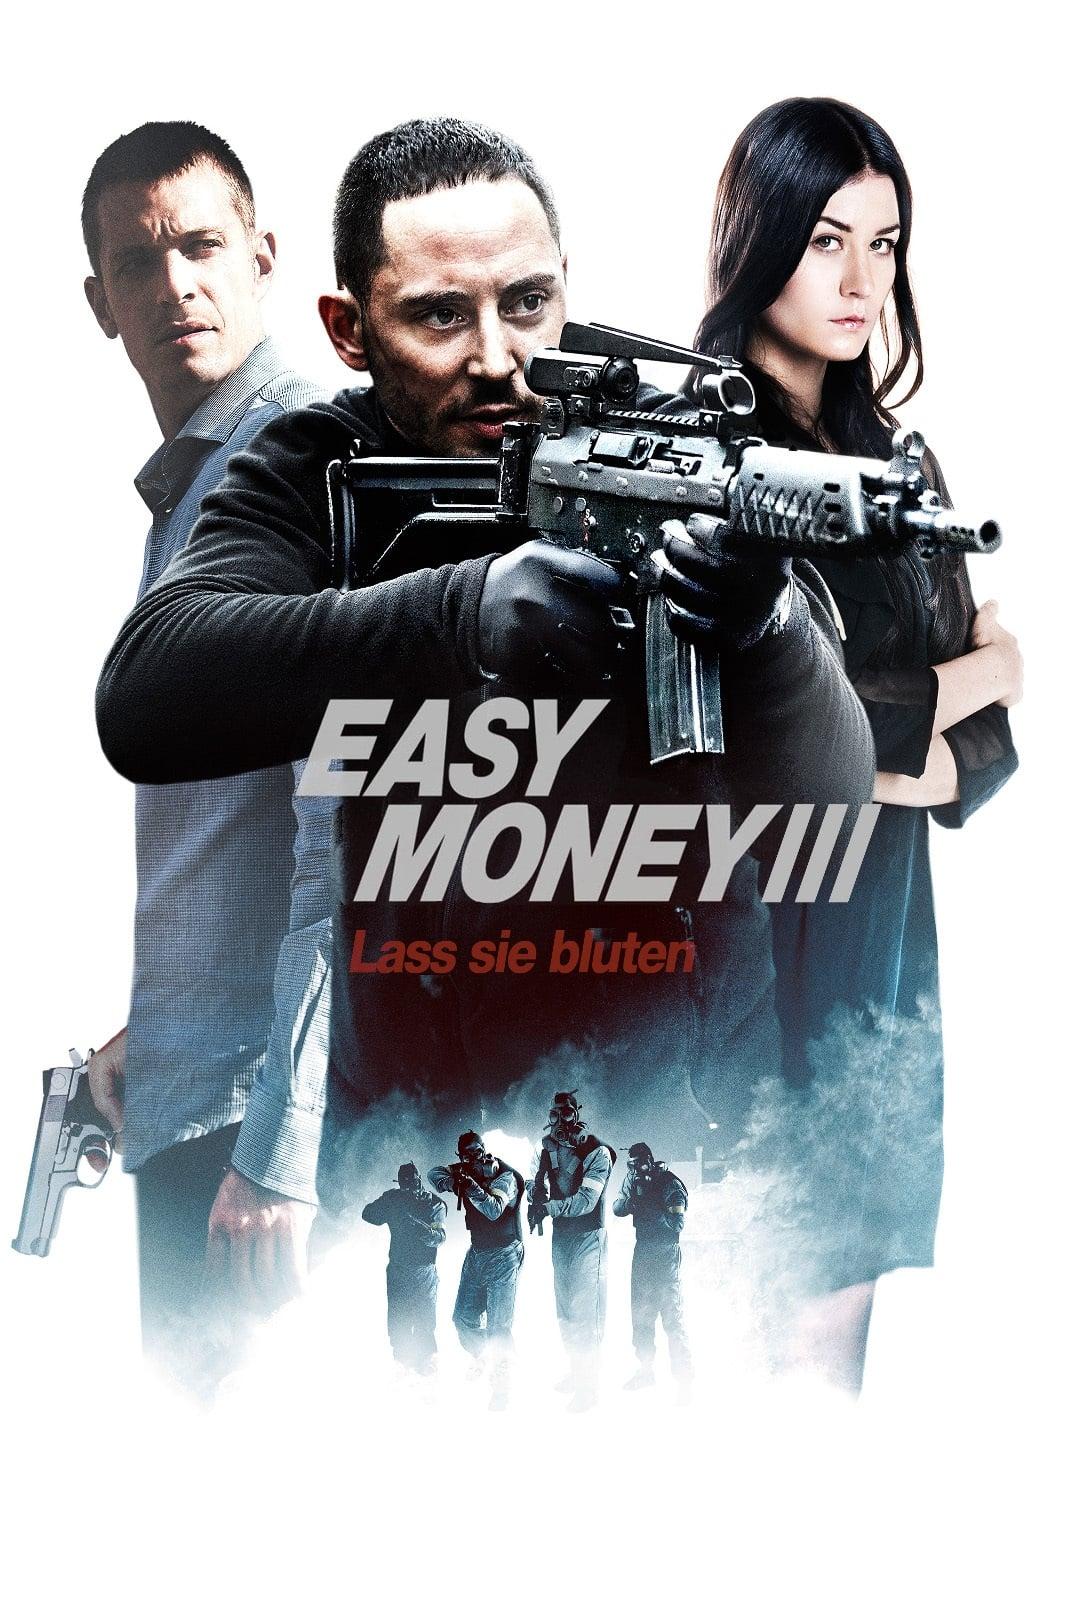 Easy Money III - Lass sie bluten poster